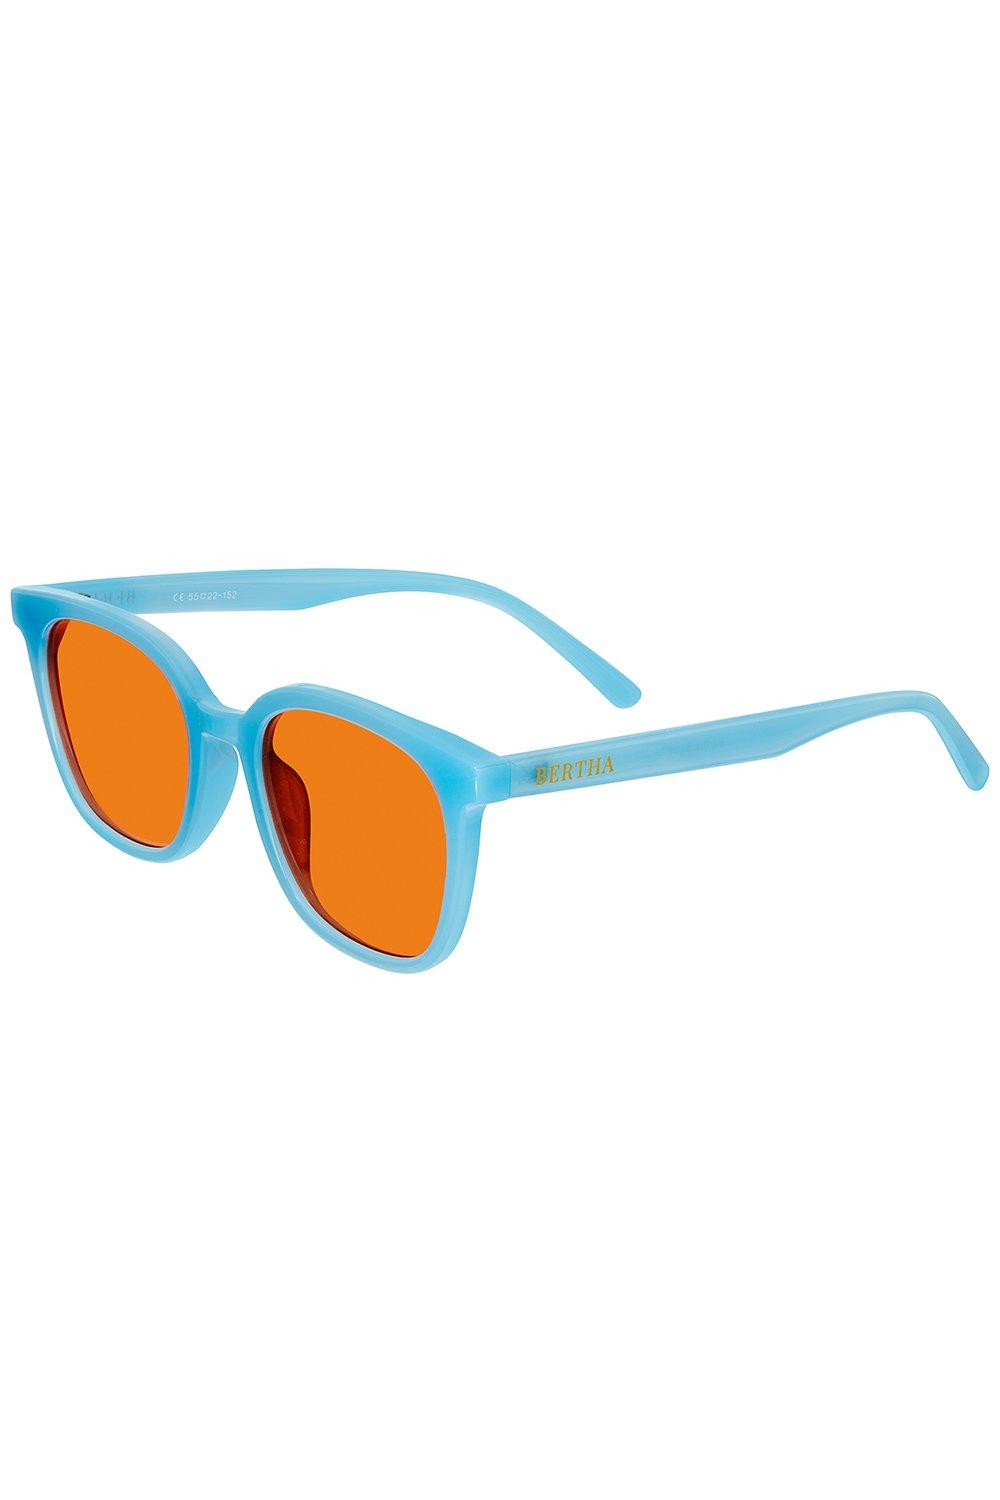 Поляризационные солнцезащитные очки Betty Bertha, оранжевый